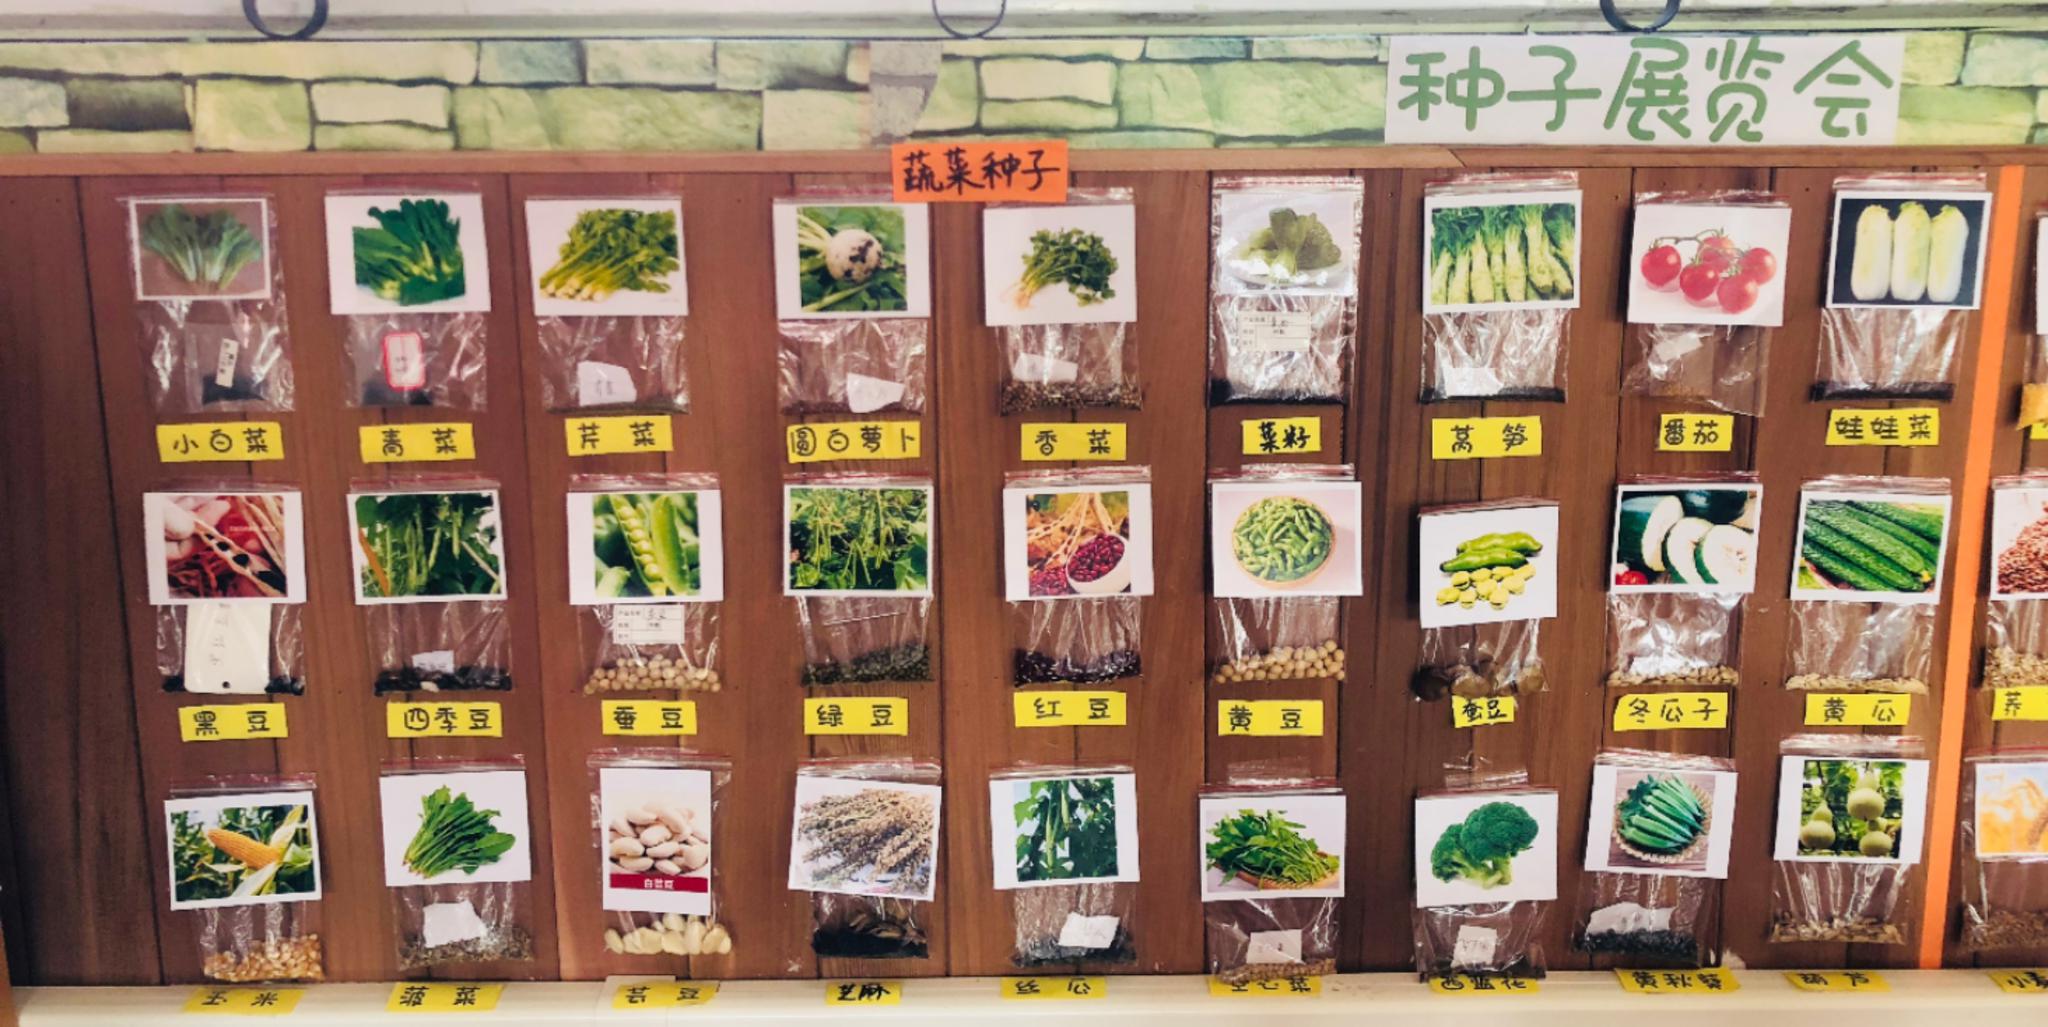 巧手来拼图 种子大变身——西安经发学校植物籽粒拼图作品展